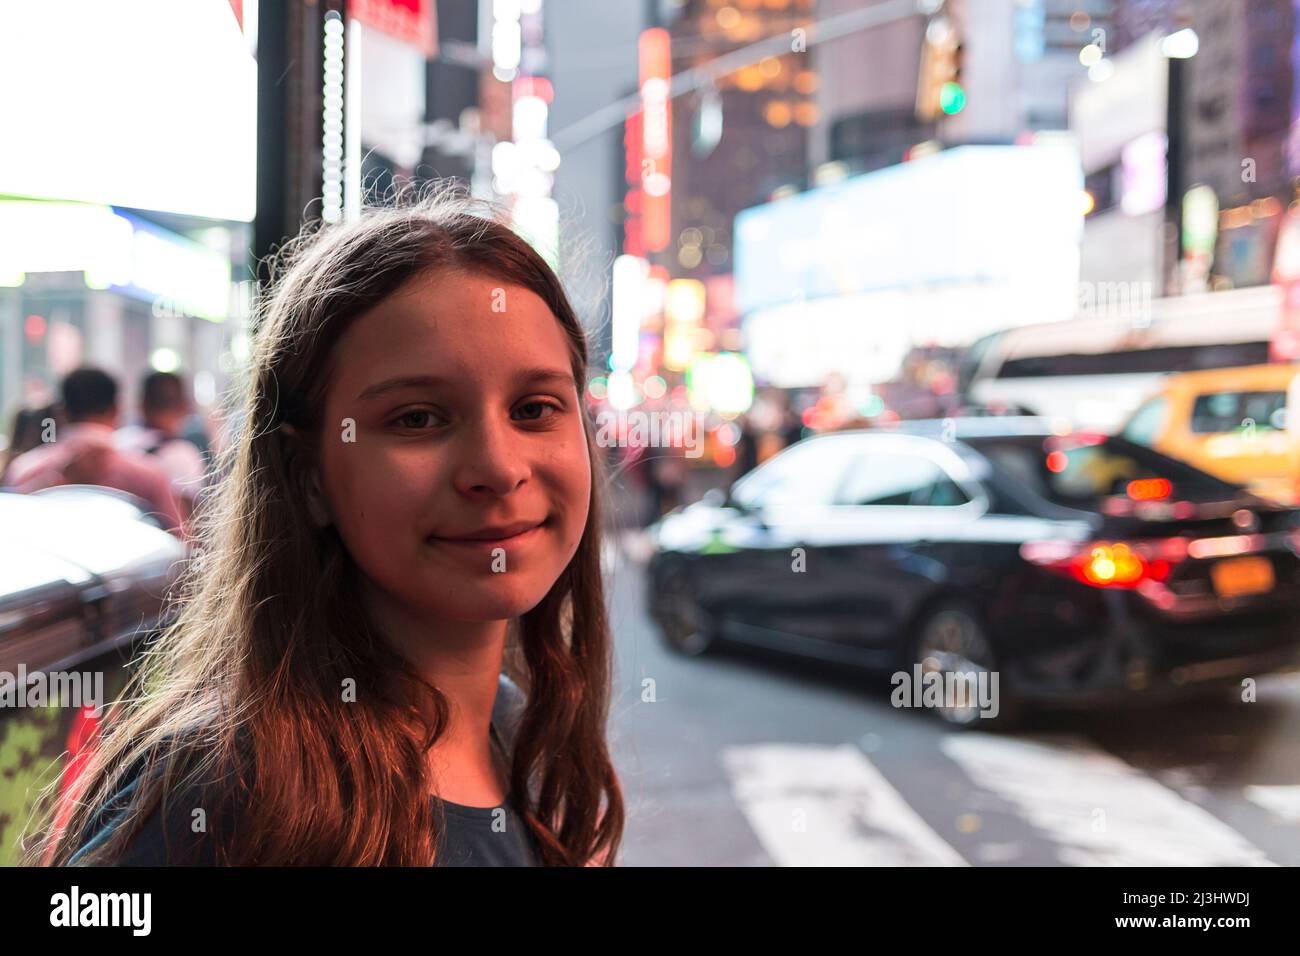 49 Street, New York City, NY, Estados Unidos, 14 años, Adolescente caucásica con pelo marrón en Times Square Foto de stock